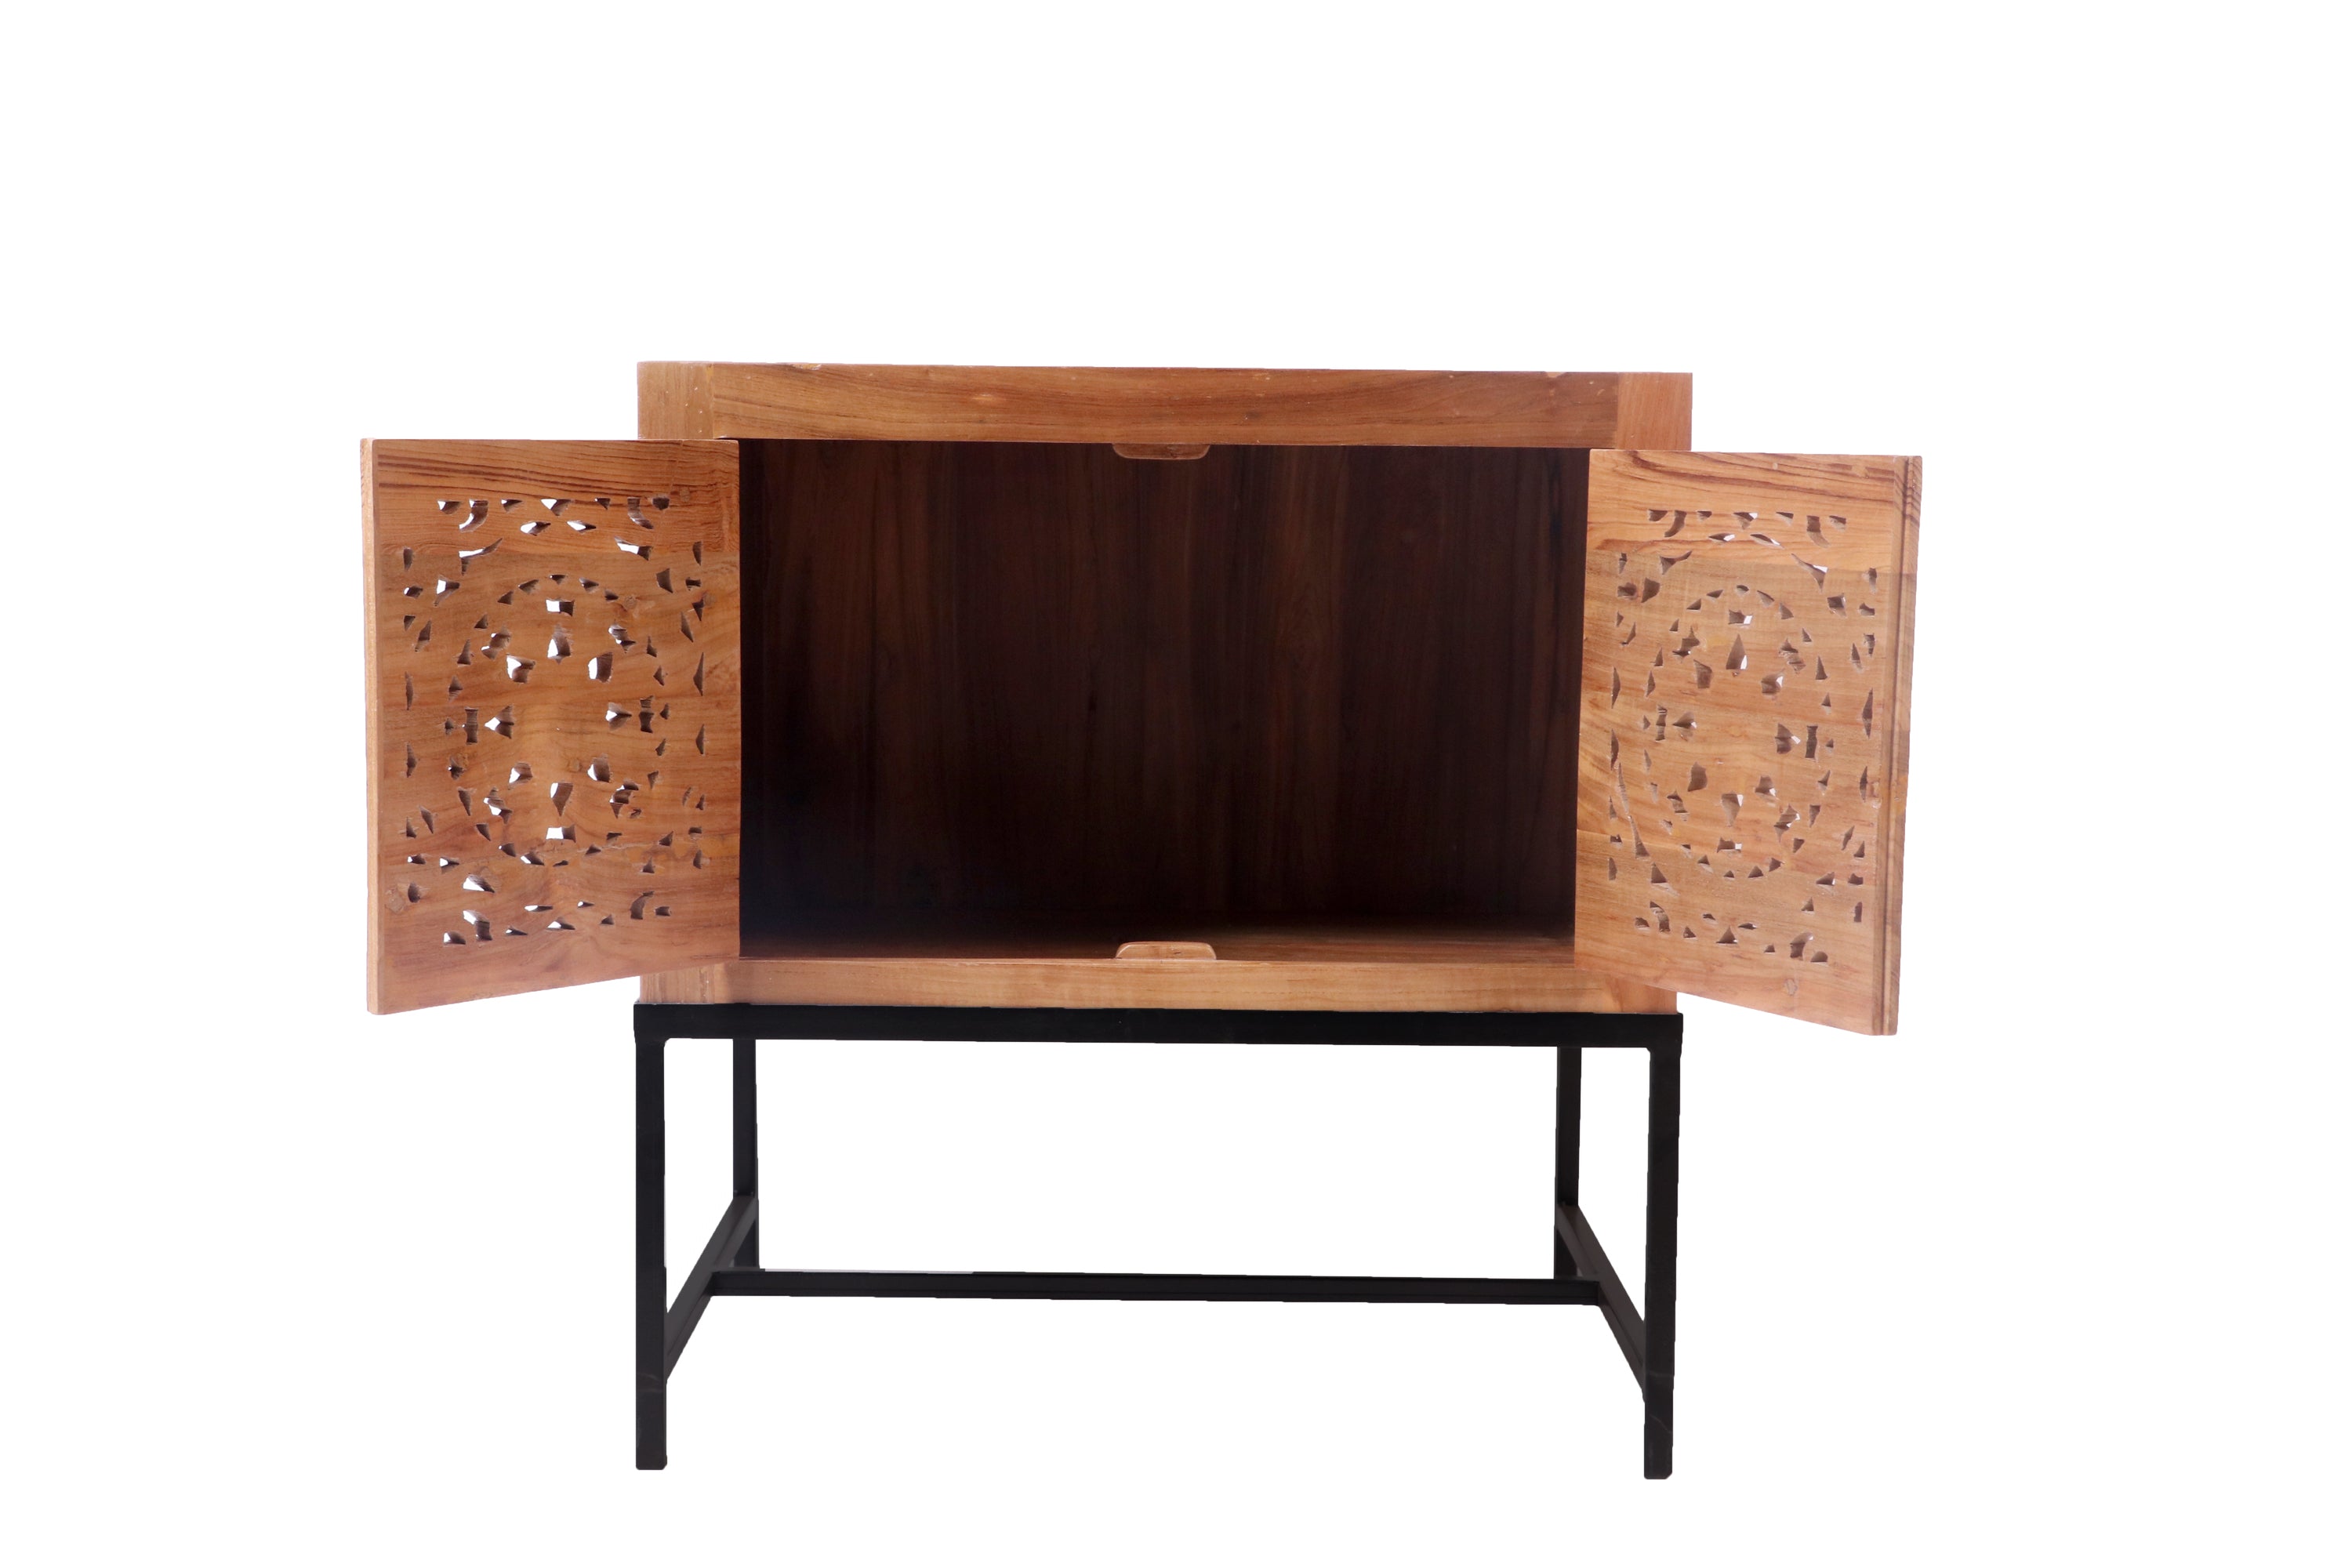 Teak wood Double Door Cabinet with Metallic Stand Cupboard